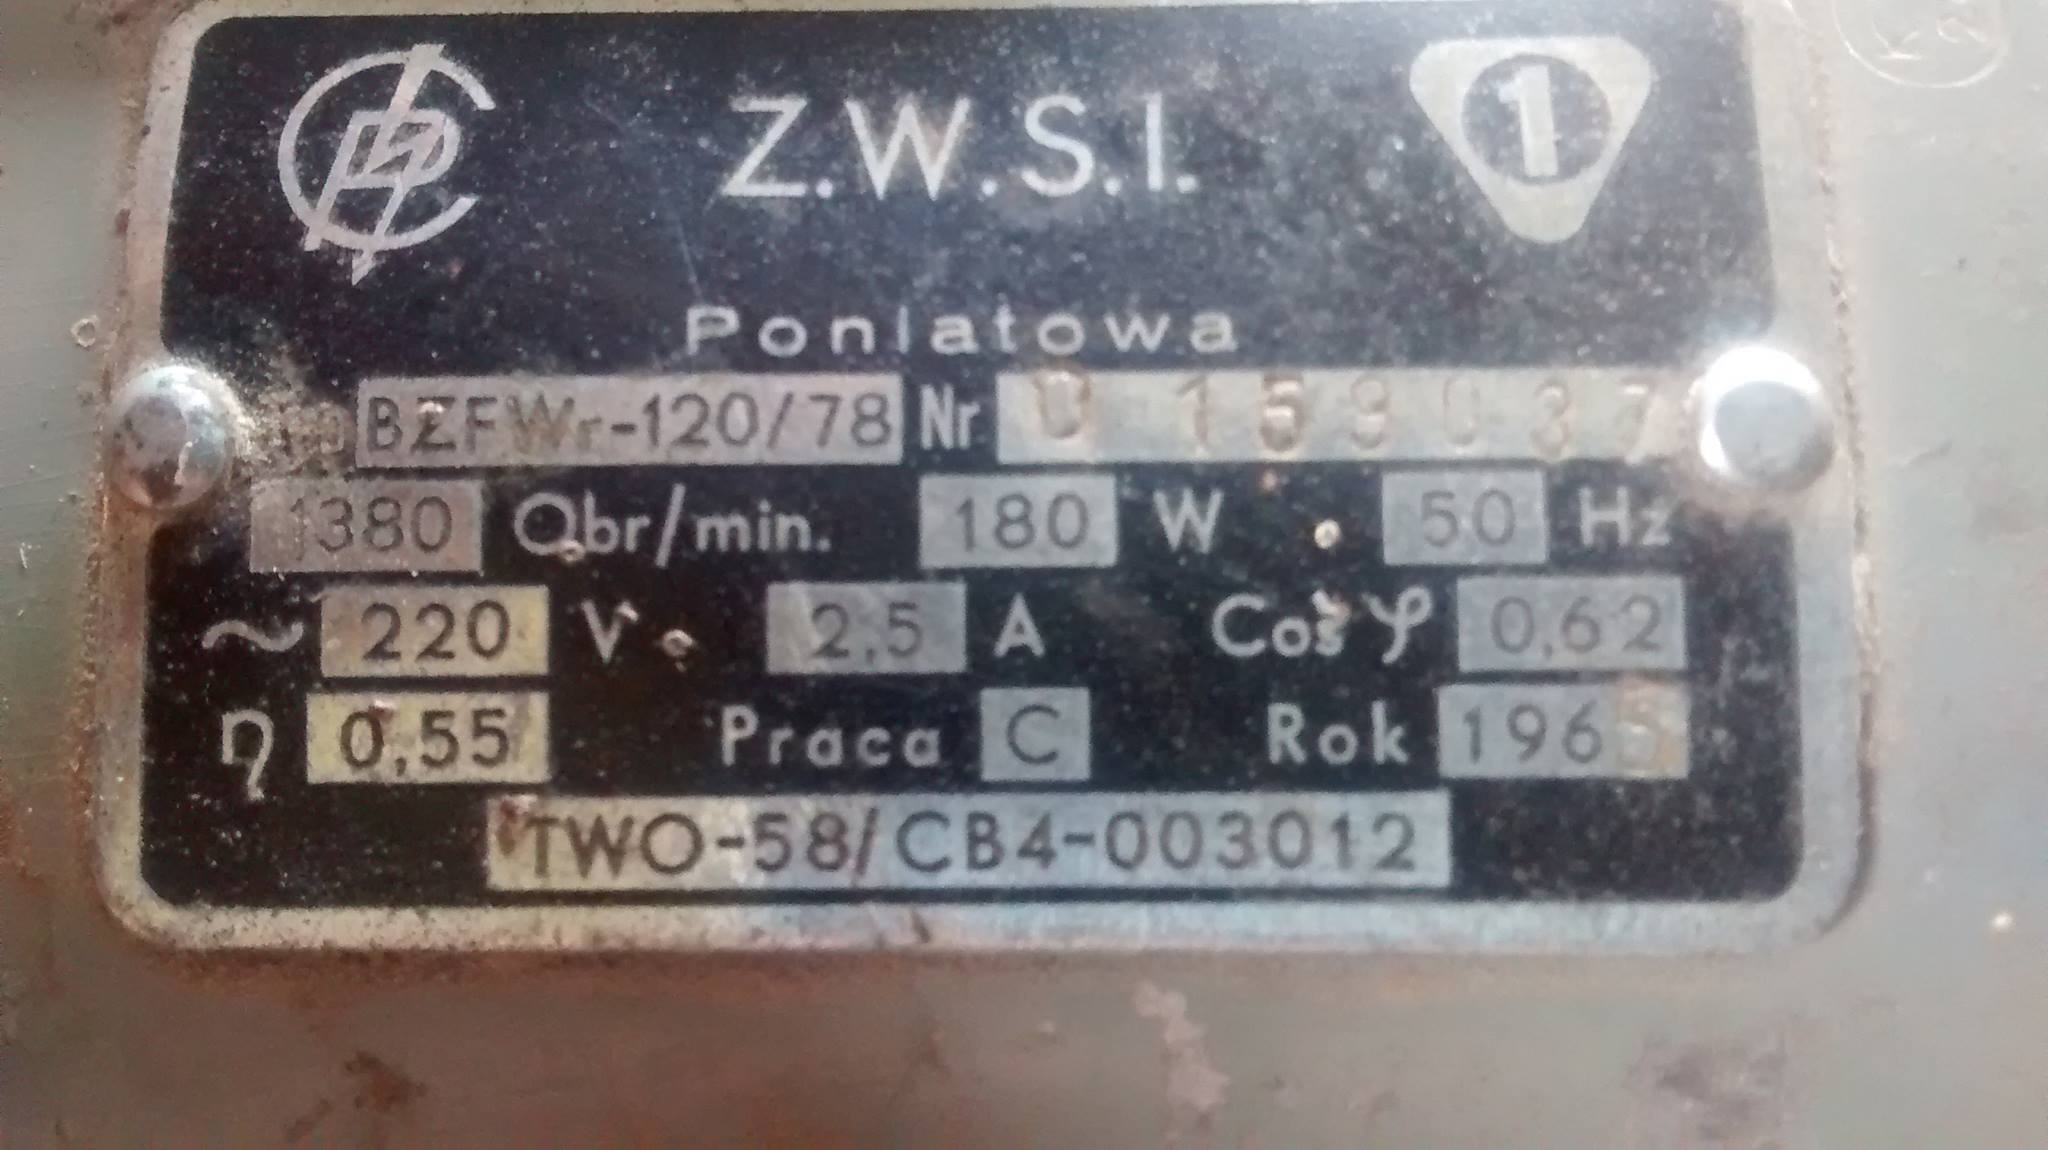 Z.W.S.I BZFWr120/78 Podłączenie przewodu zasilającego